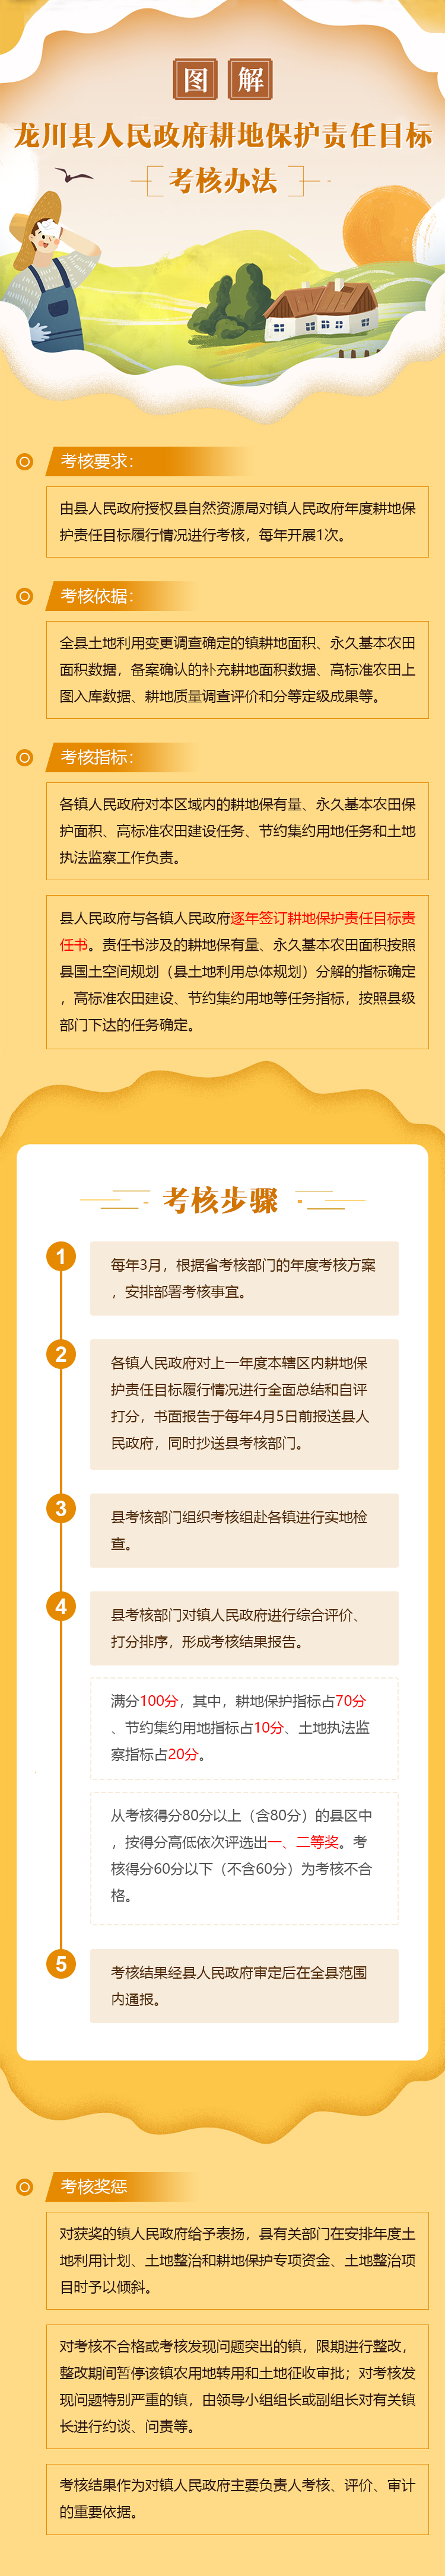 龙川县人民政府耕地保护目标责任考核办法.jpg